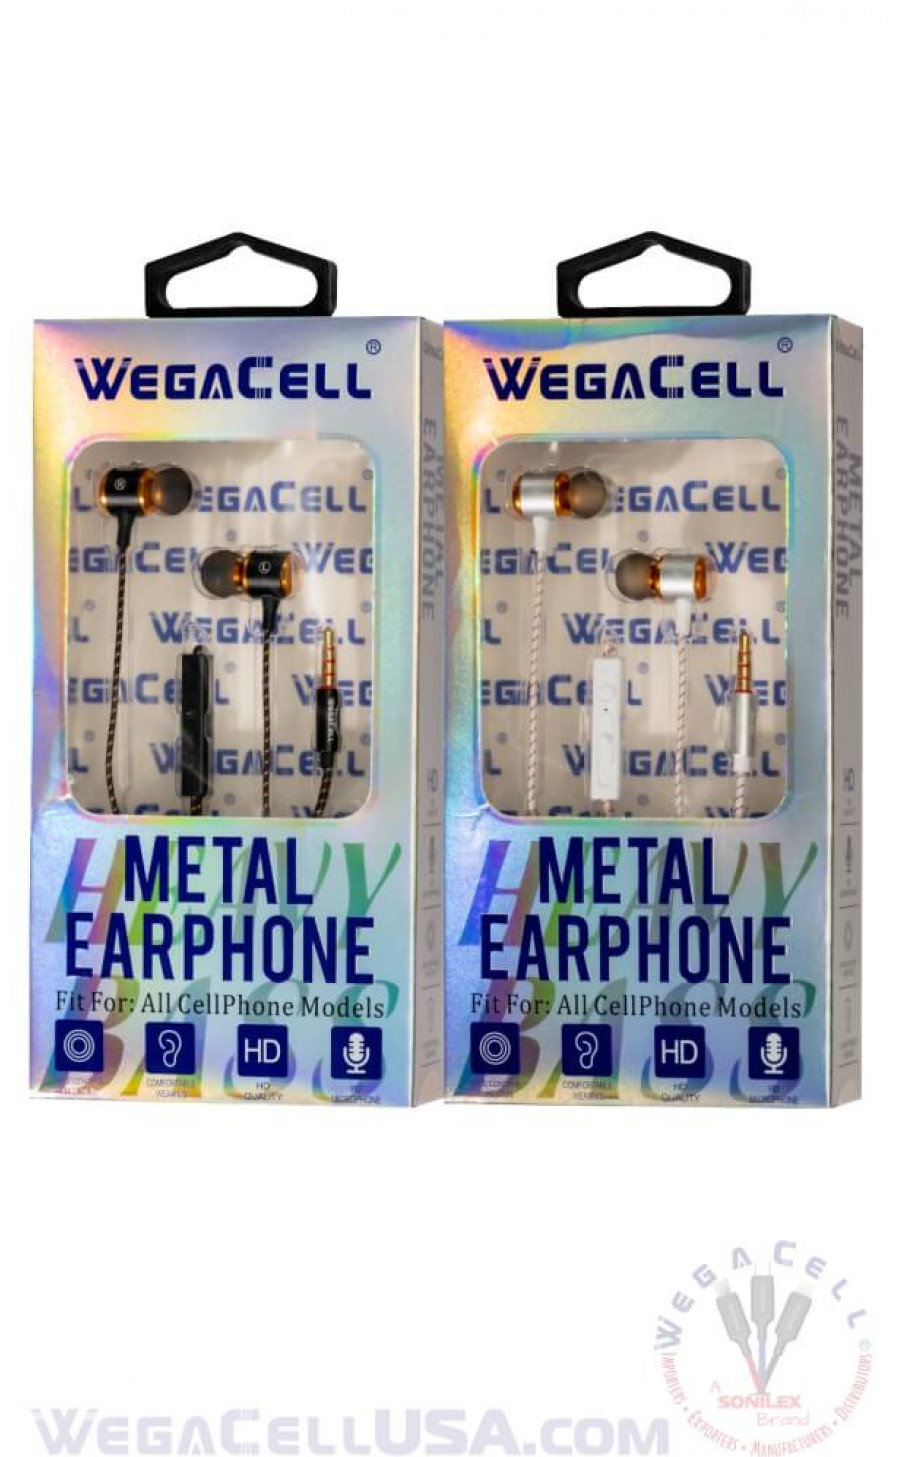 in-ear stereo earphone noise isolating heavy bass - wholesale pkg. wegacell: wl-222ep-hf earphone 20